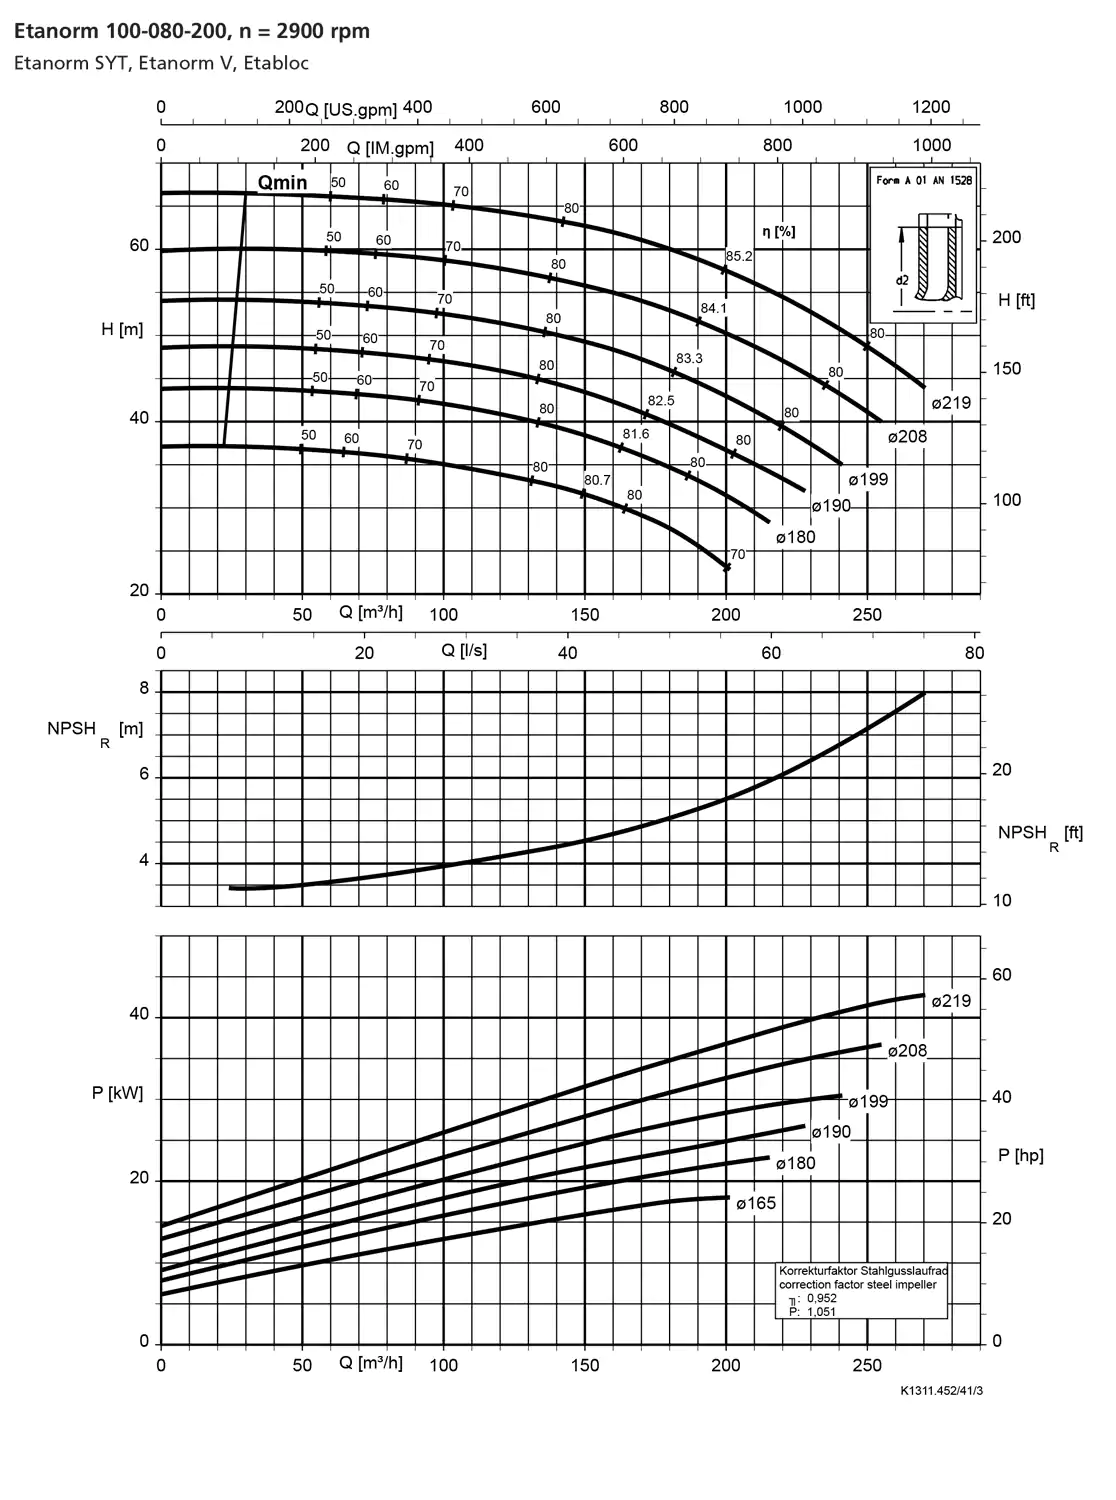 نمودار-کارکرد-پمپ-etanorm-syt-100-80-200-2900